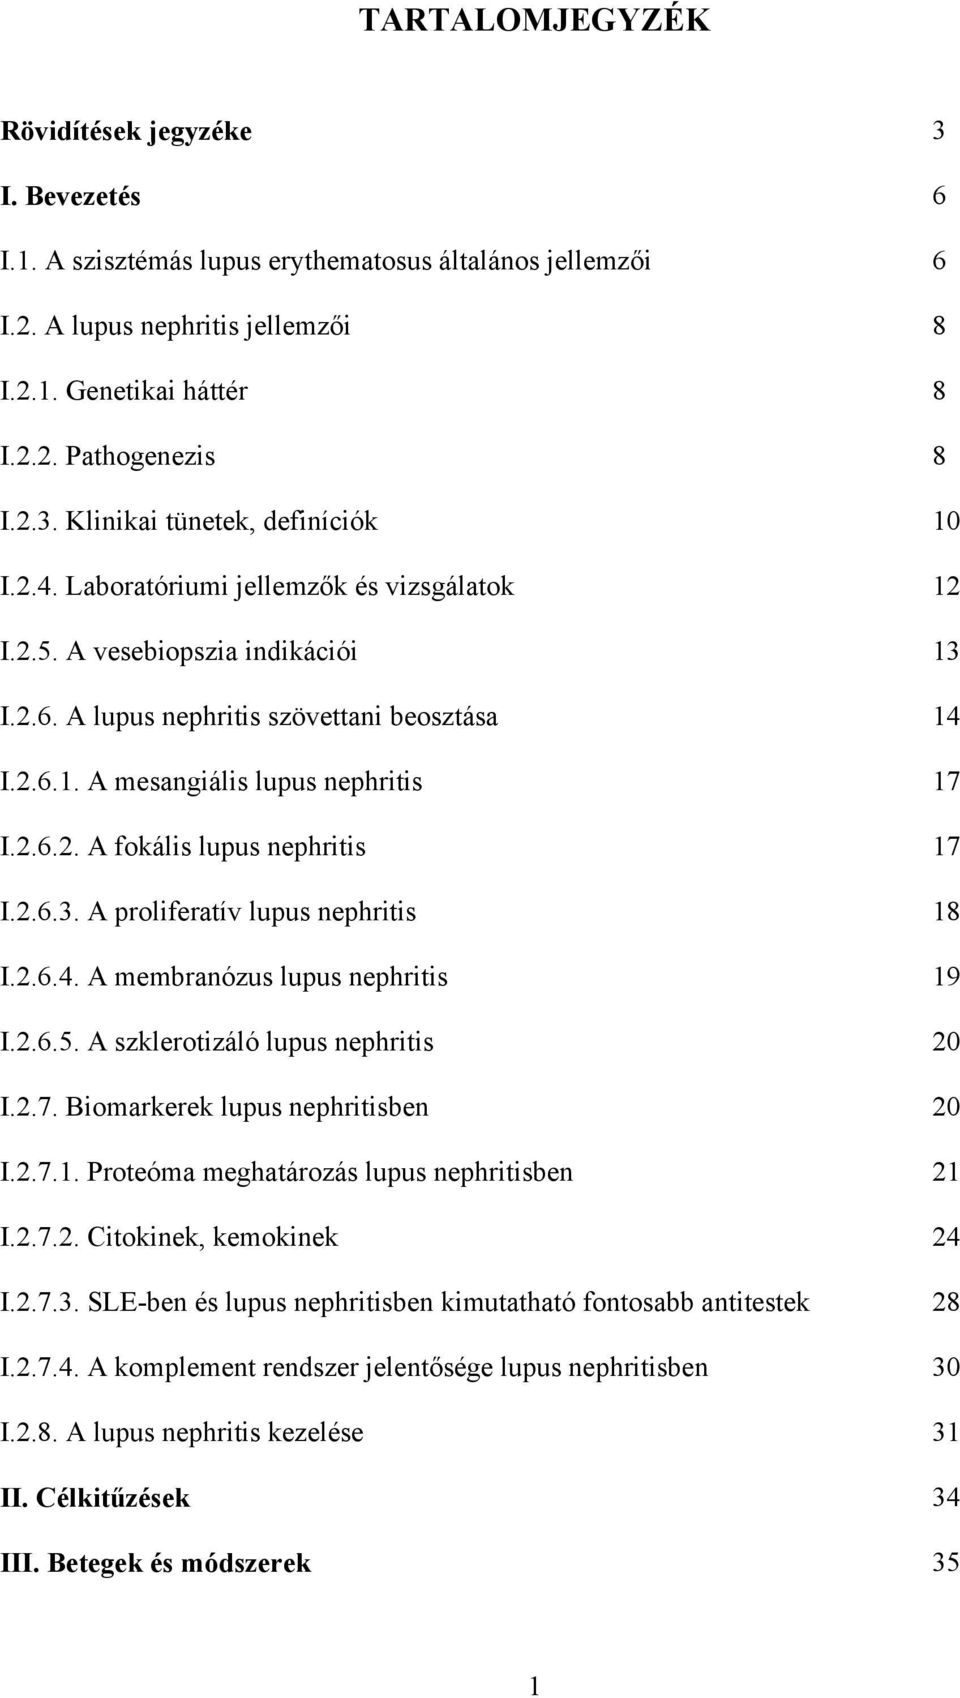 2.6.2. A fokális lupus nephritis 17 I.2.6.3. A proliferatív lupus nephritis 18 I.2.6.4. A membranózus lupus nephritis 19 I.2.6.5. A szklerotizáló lupus nephritis 20 I.2.7. Biomarkerek lupus nephritisben 20 I.